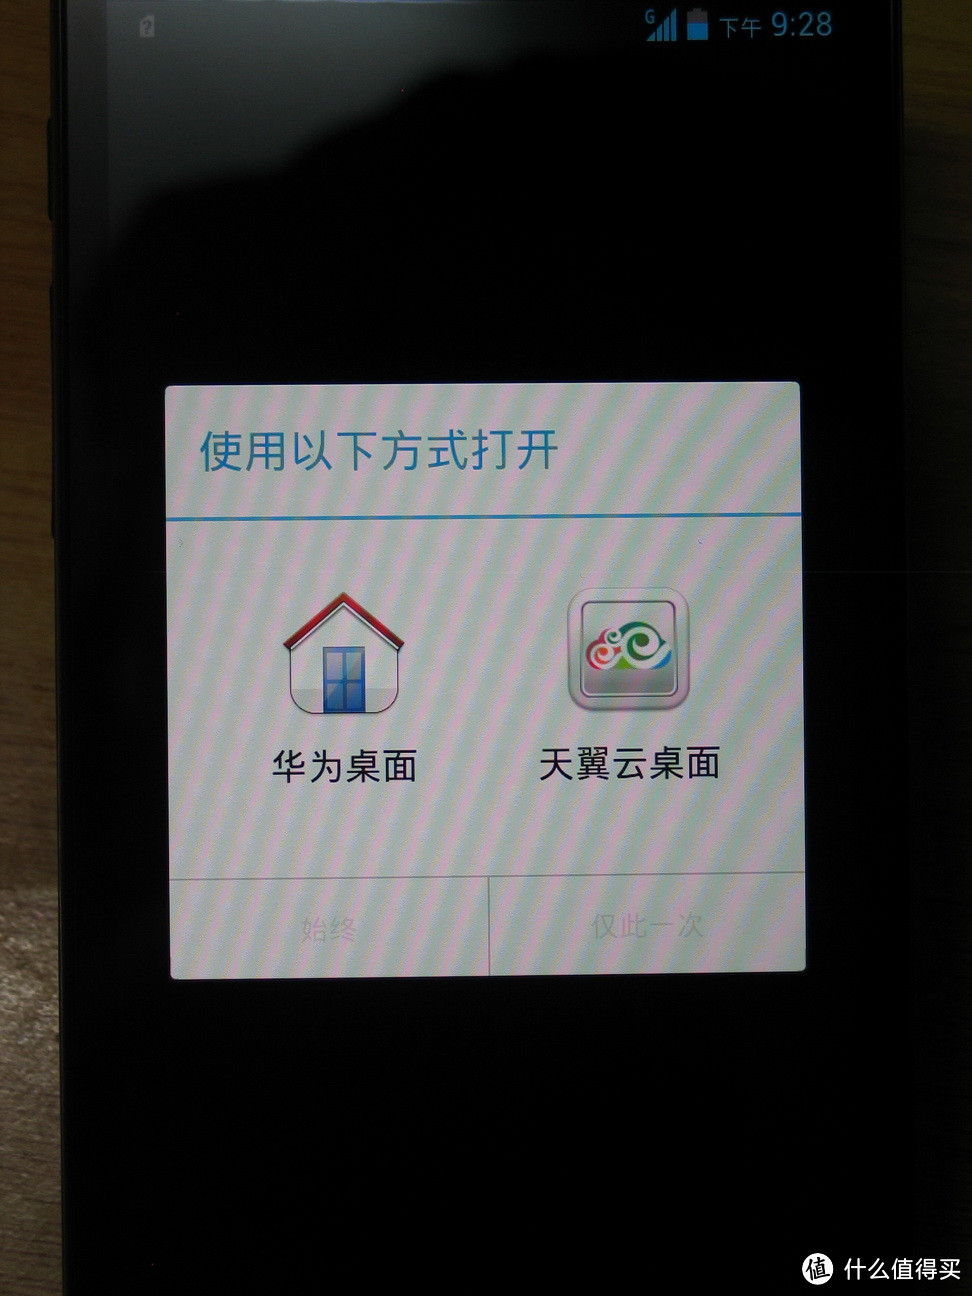 华为 A199 电信3G智能手机 （CDMA+GSM双待双通）开箱